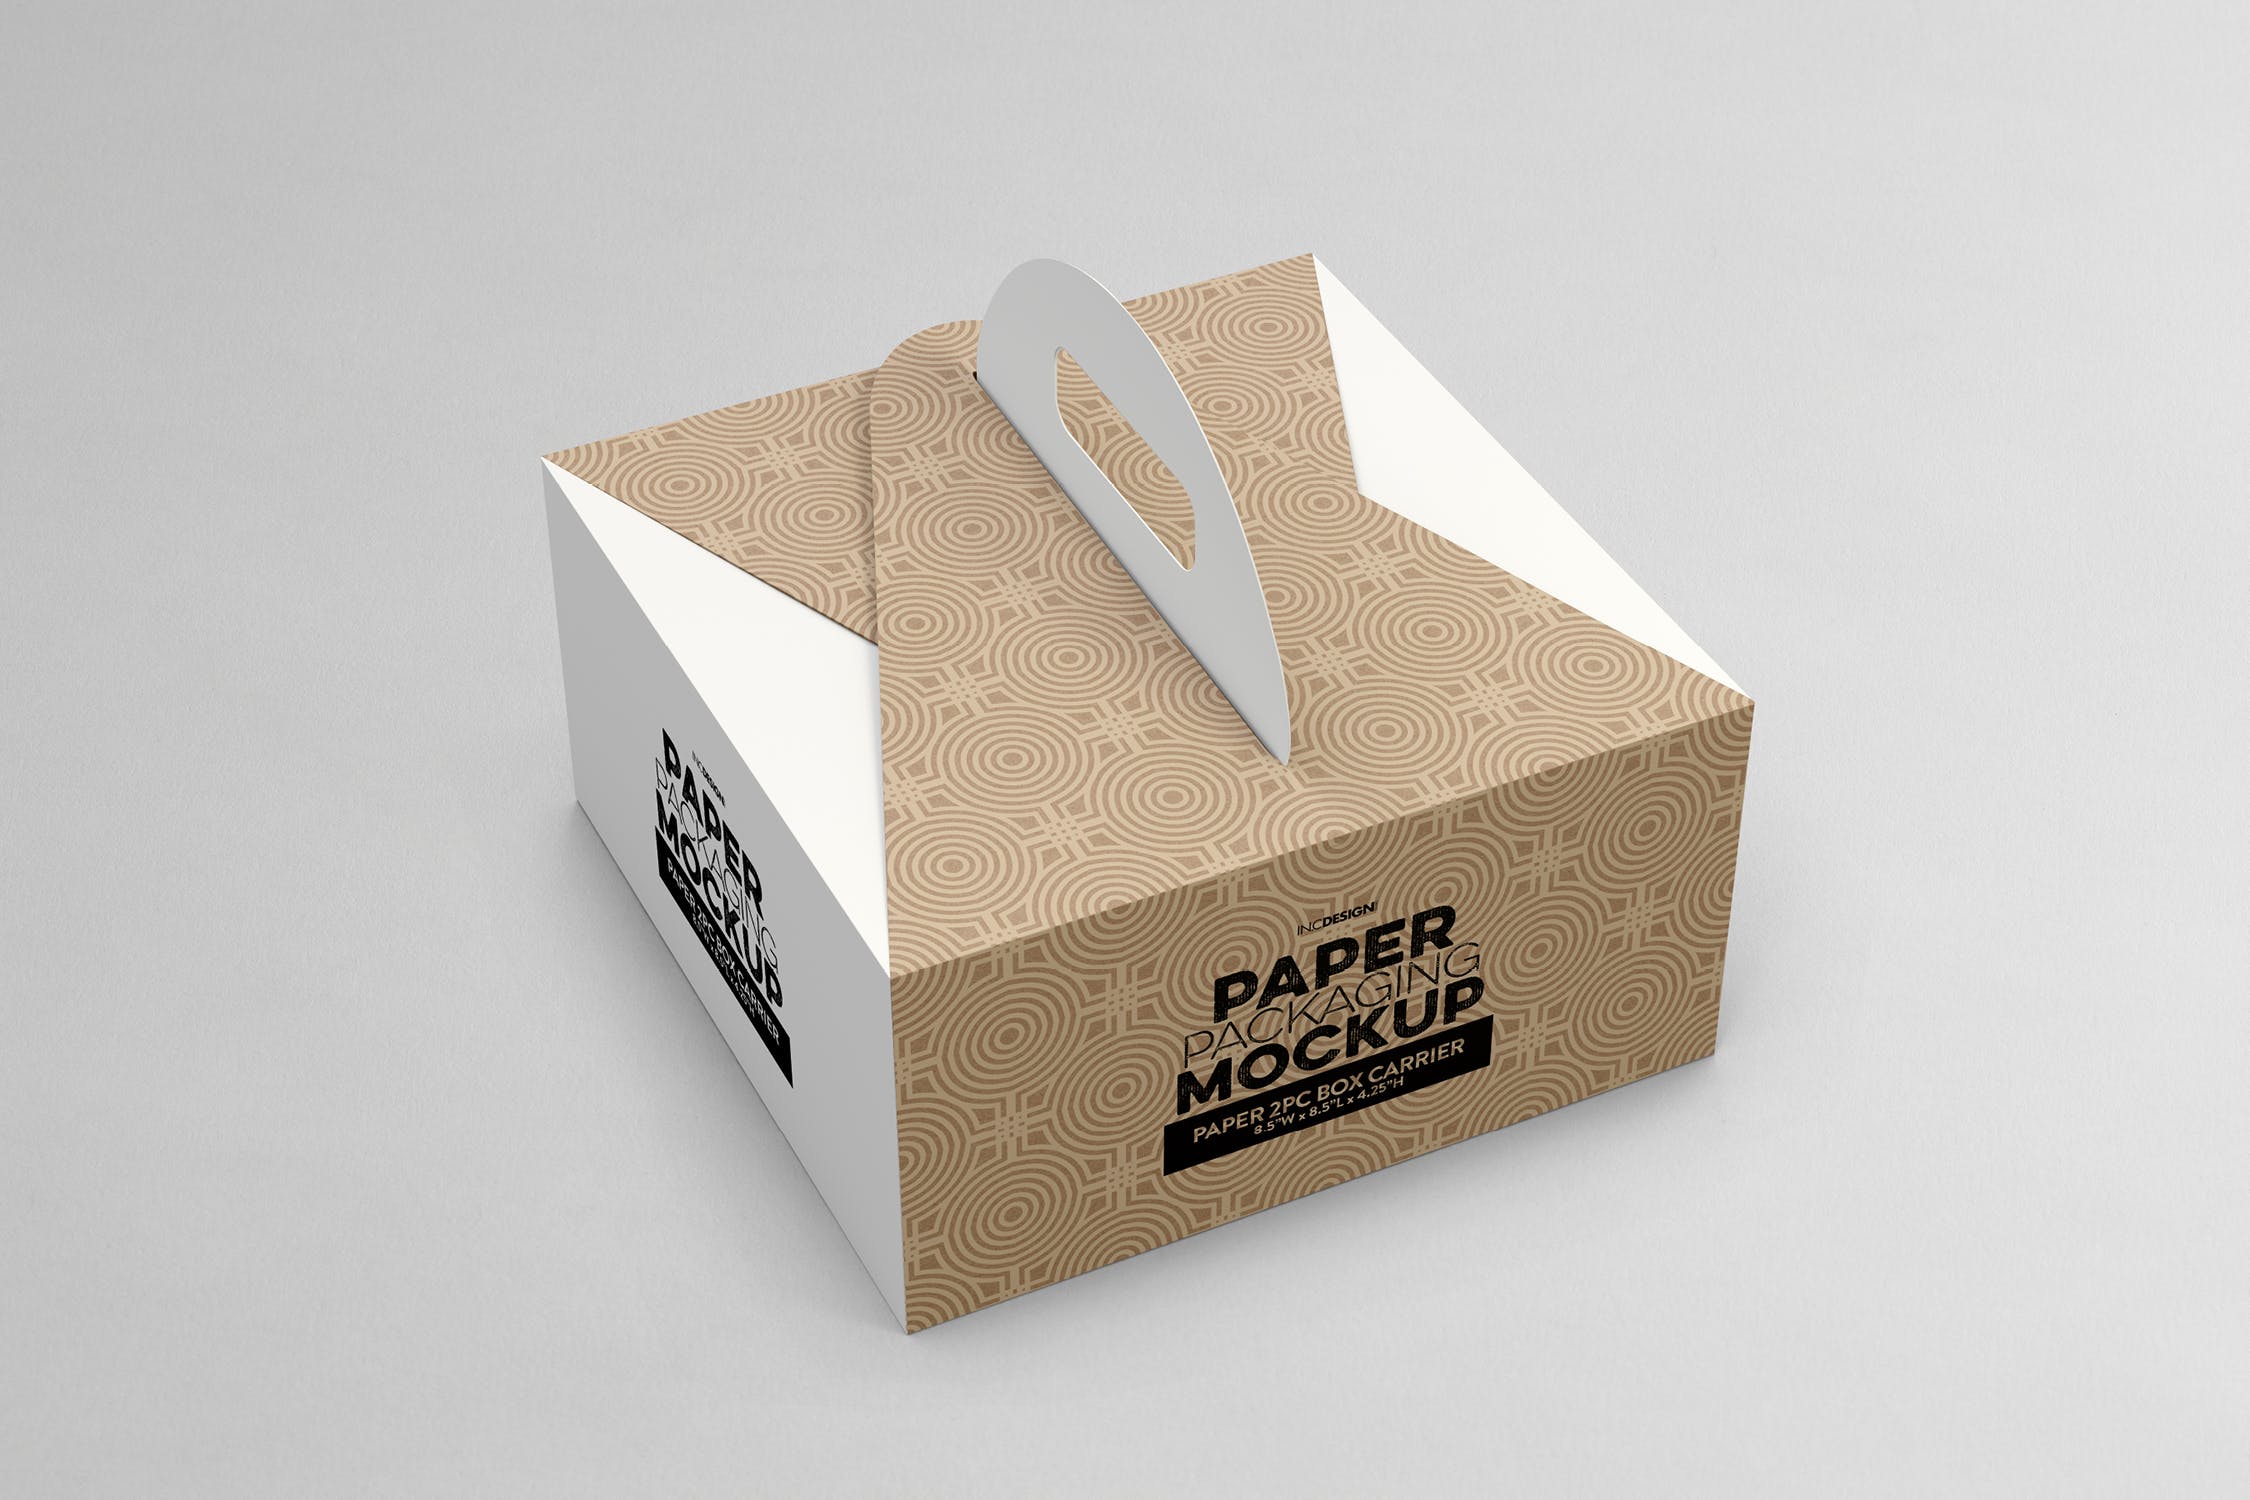 2件装纸盒包装设计样机模板 2pc PaperBox Carrier PackagingMockup插图(1)